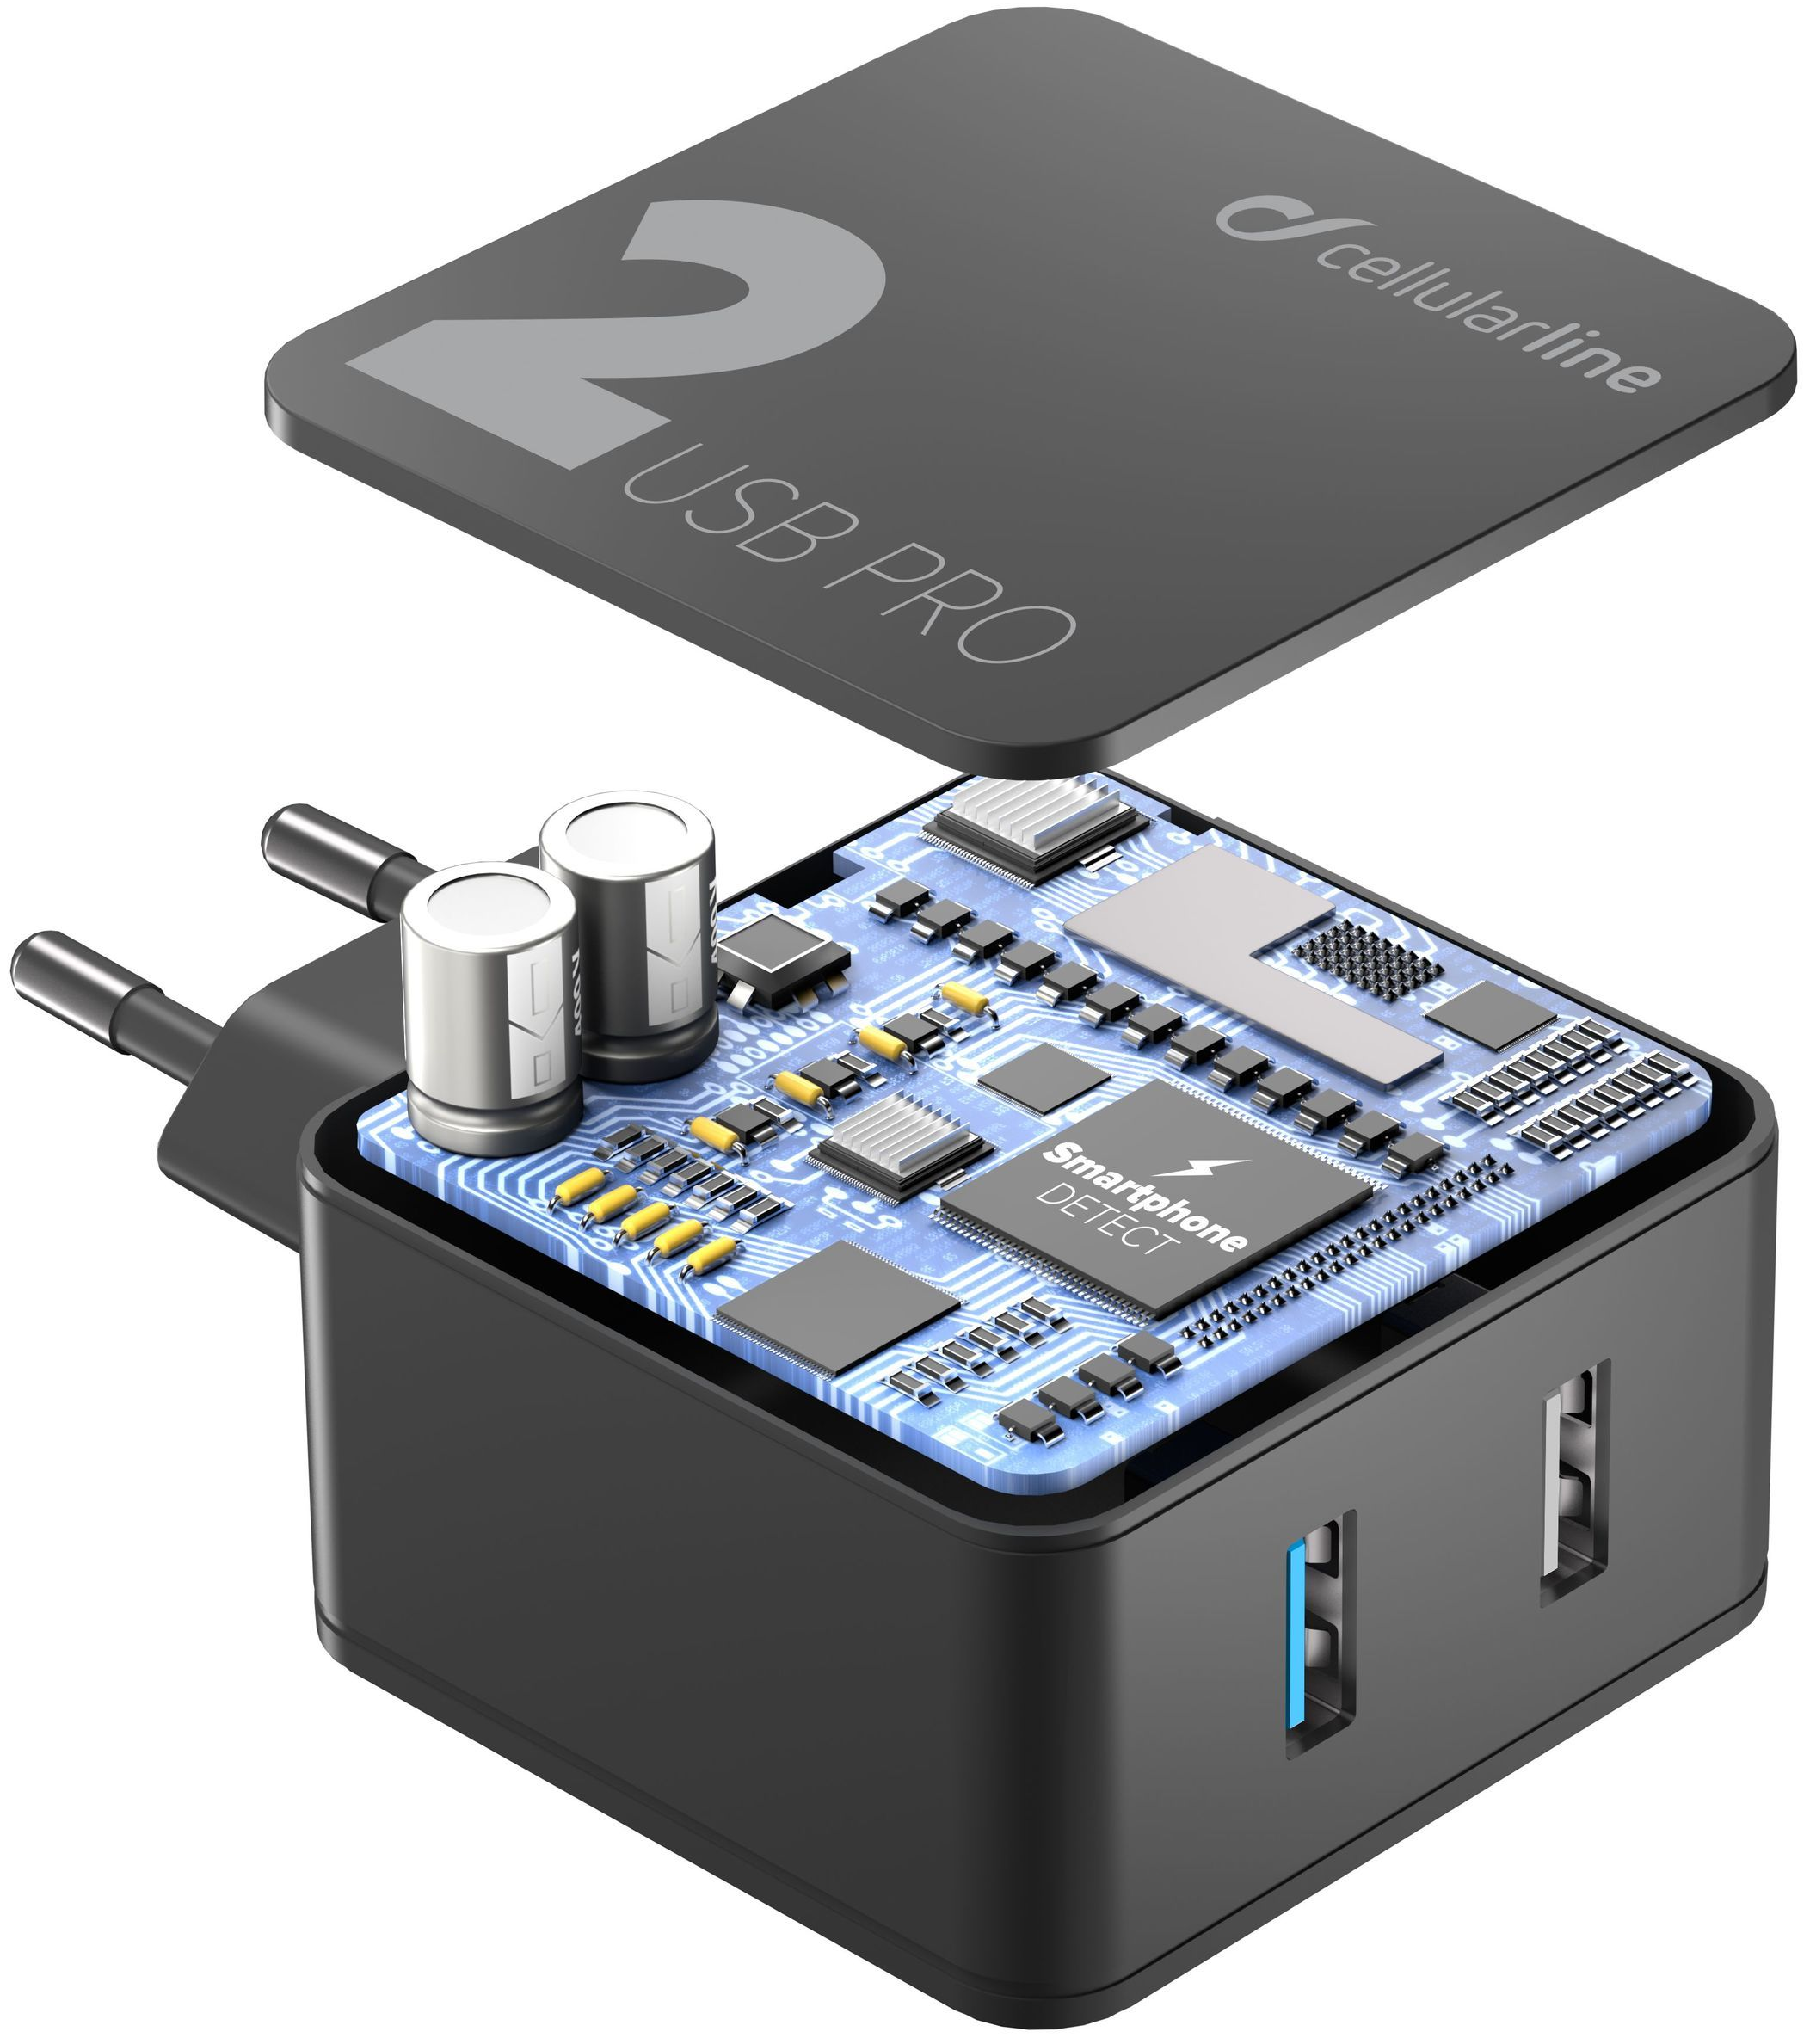 Síťová nabíječka Cellularline Multipower 2 PRO s technologií Smartphone Detect, 2 x USB port, 30W, černá 